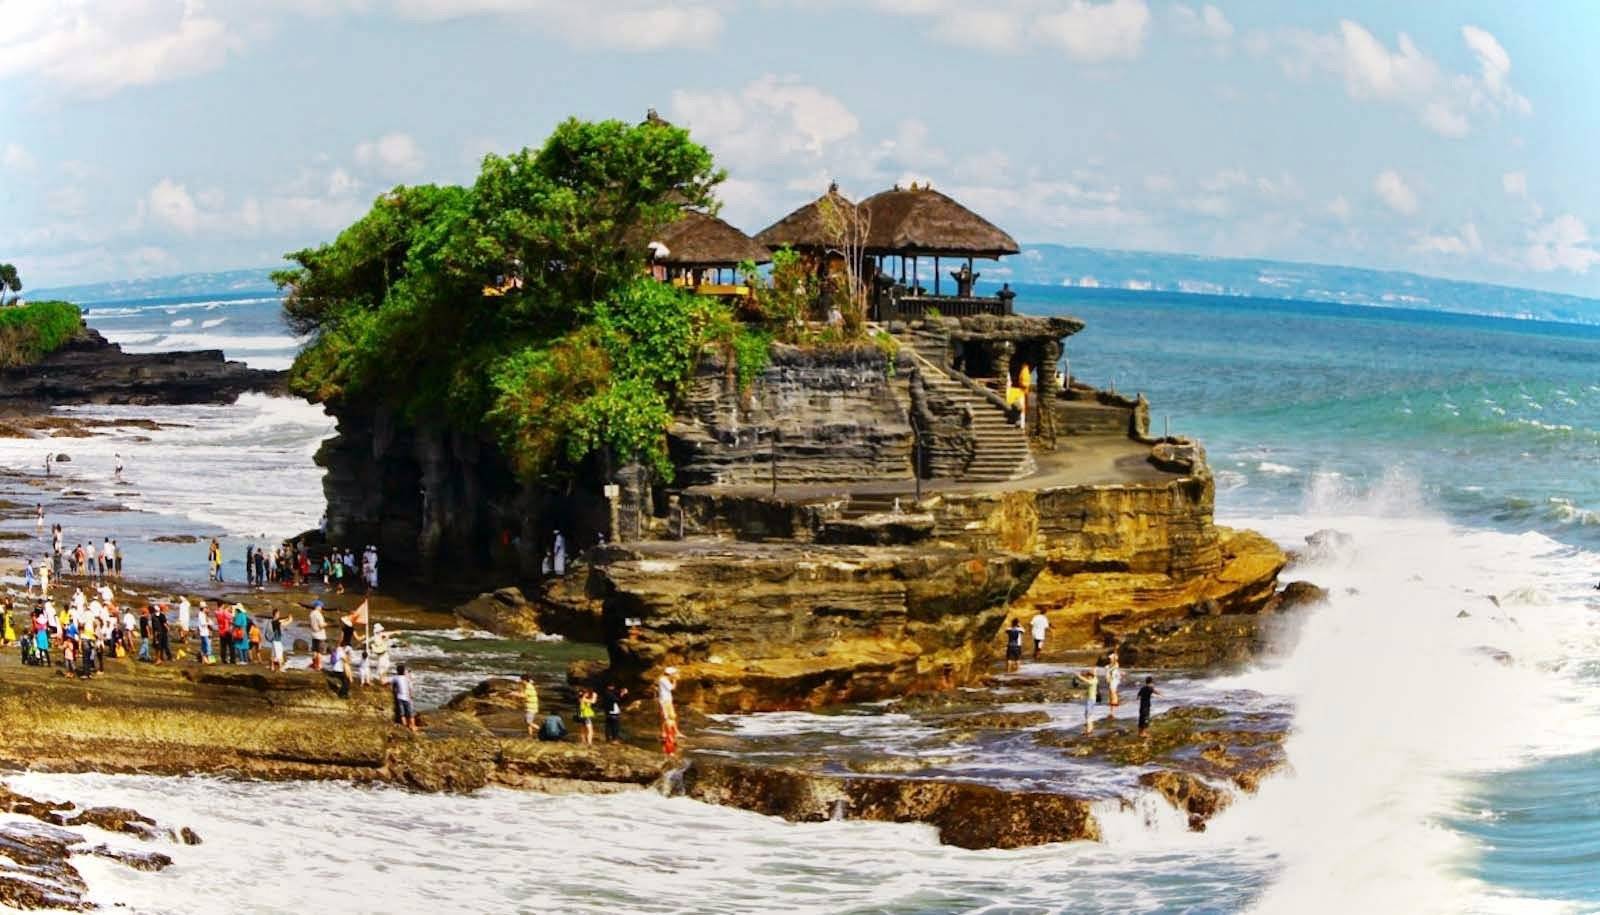 Бали - курорт в индонезии, описание отдыха на бали, отзыв и фото туриста - 2022